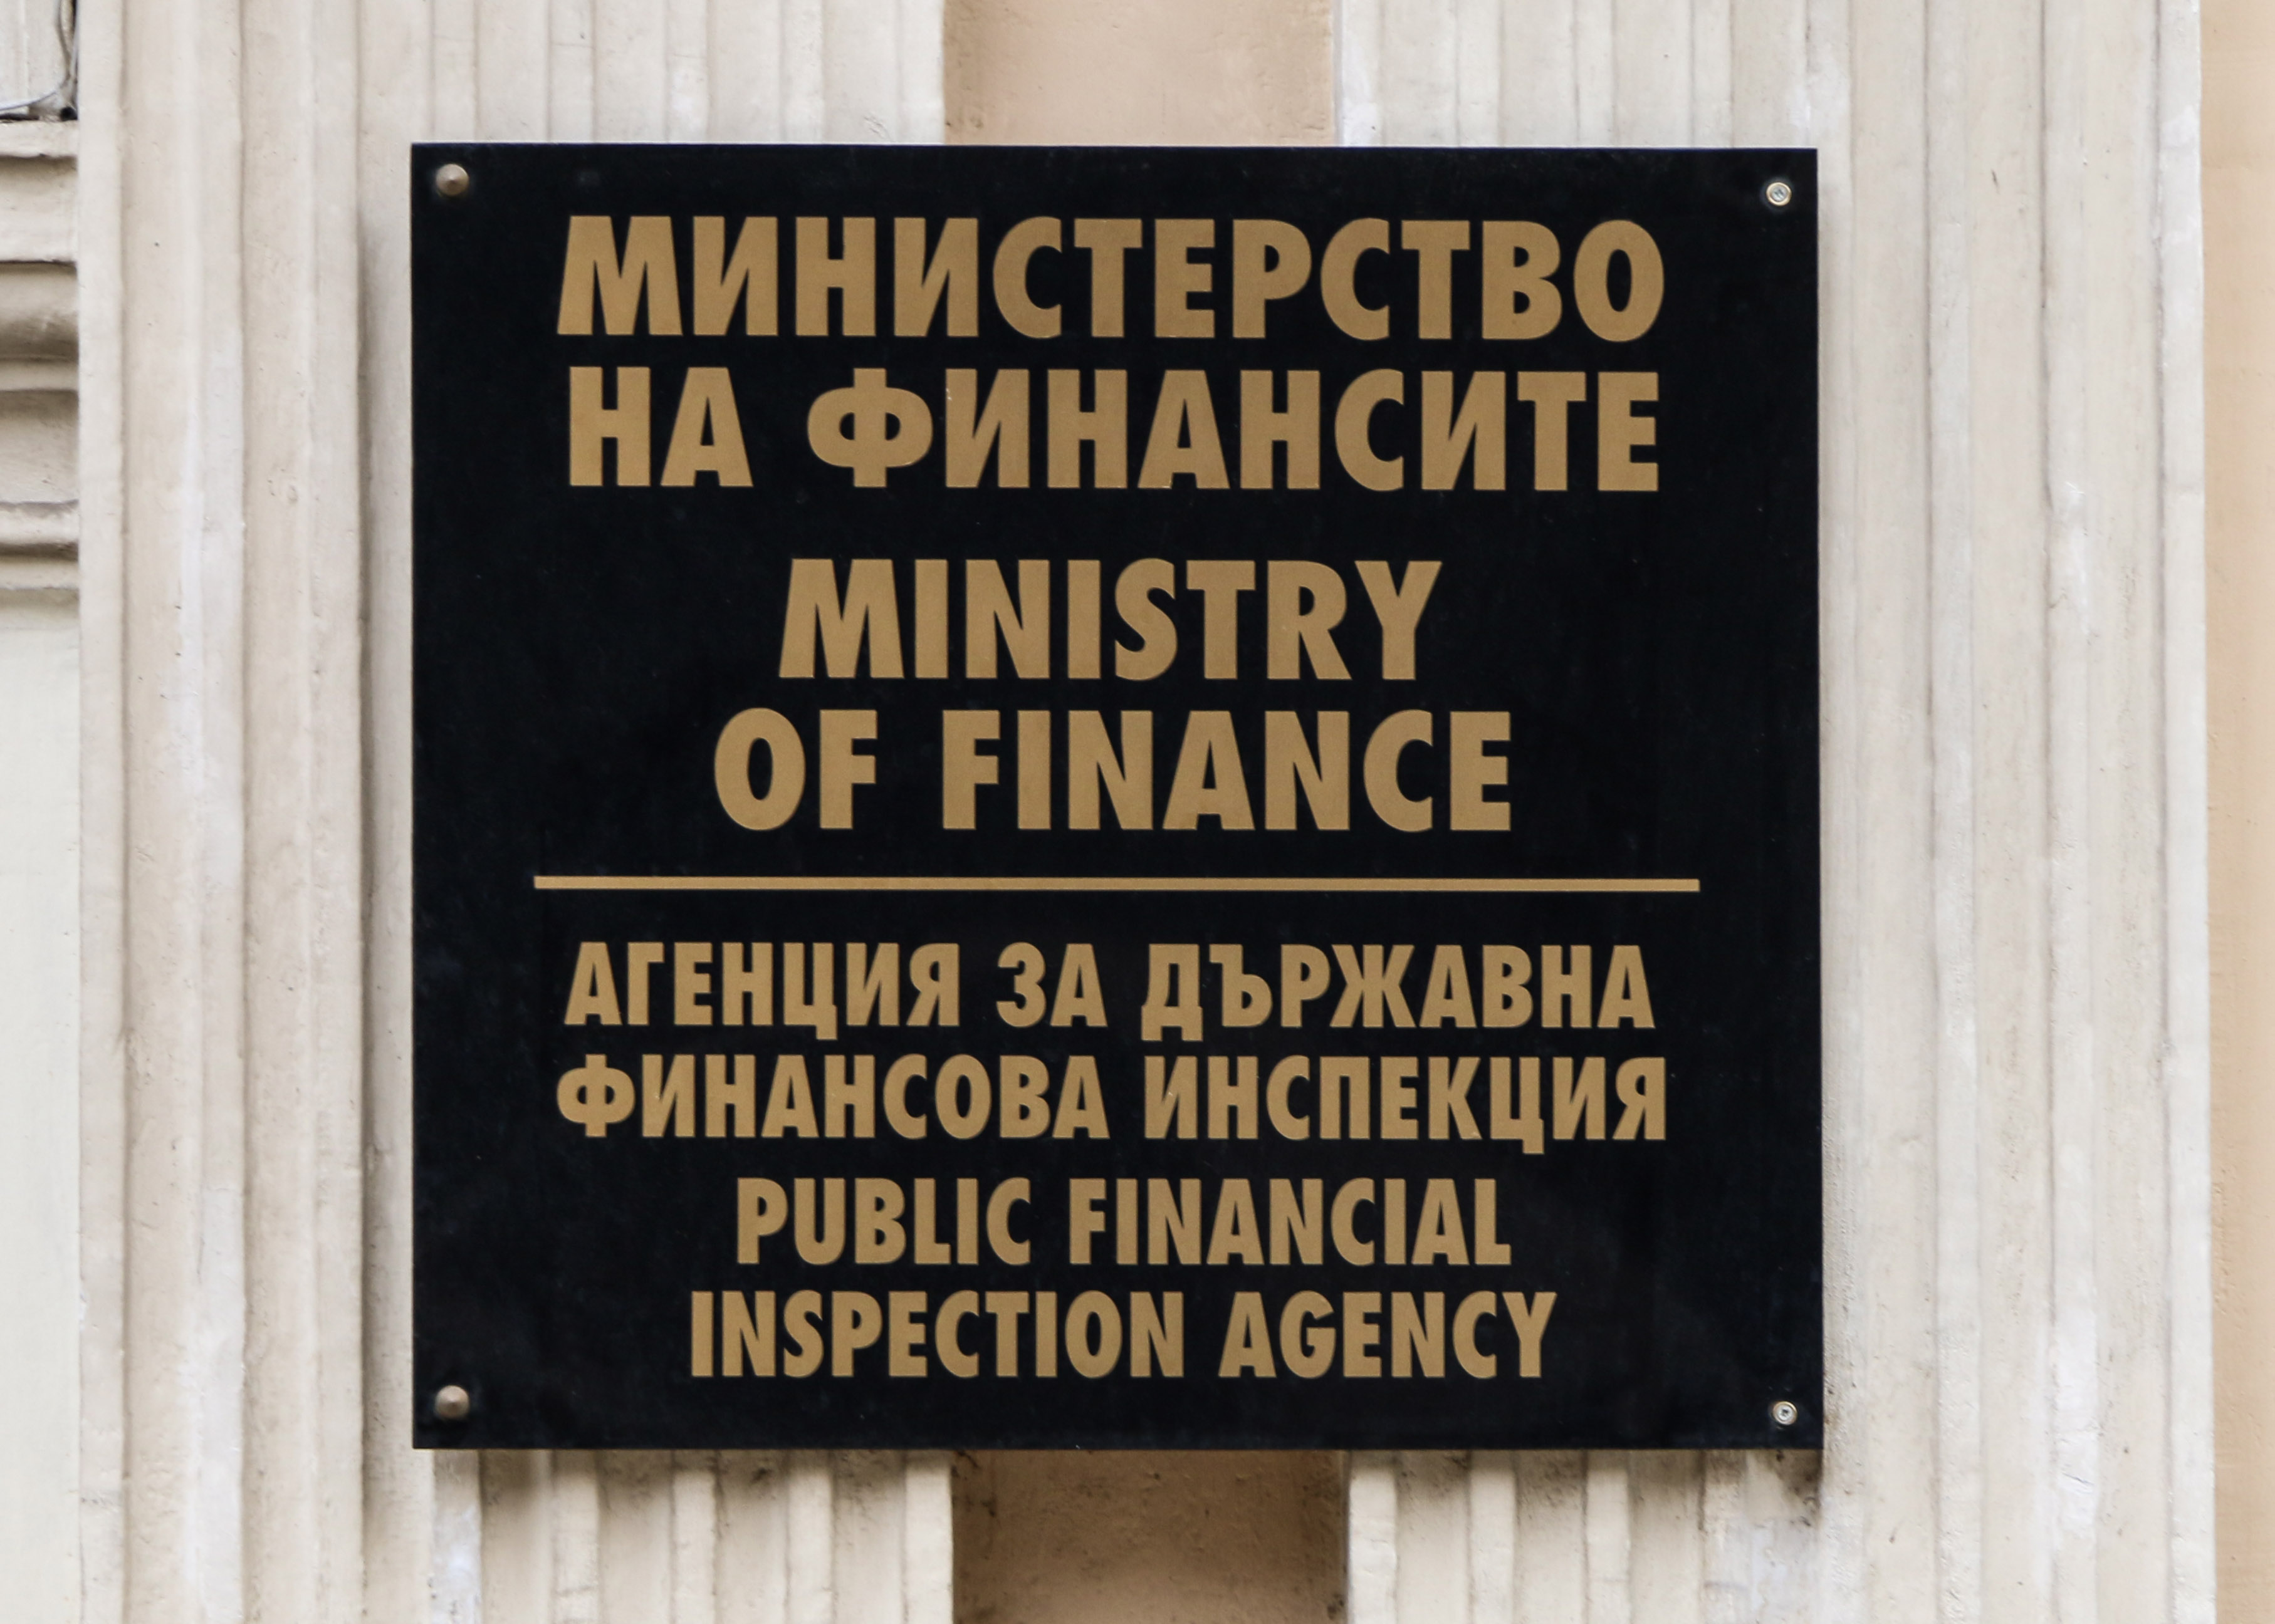 Дебатът за многогодишната финансова рамка предстои и в рамките на Българското председателство, съобщават от МФ